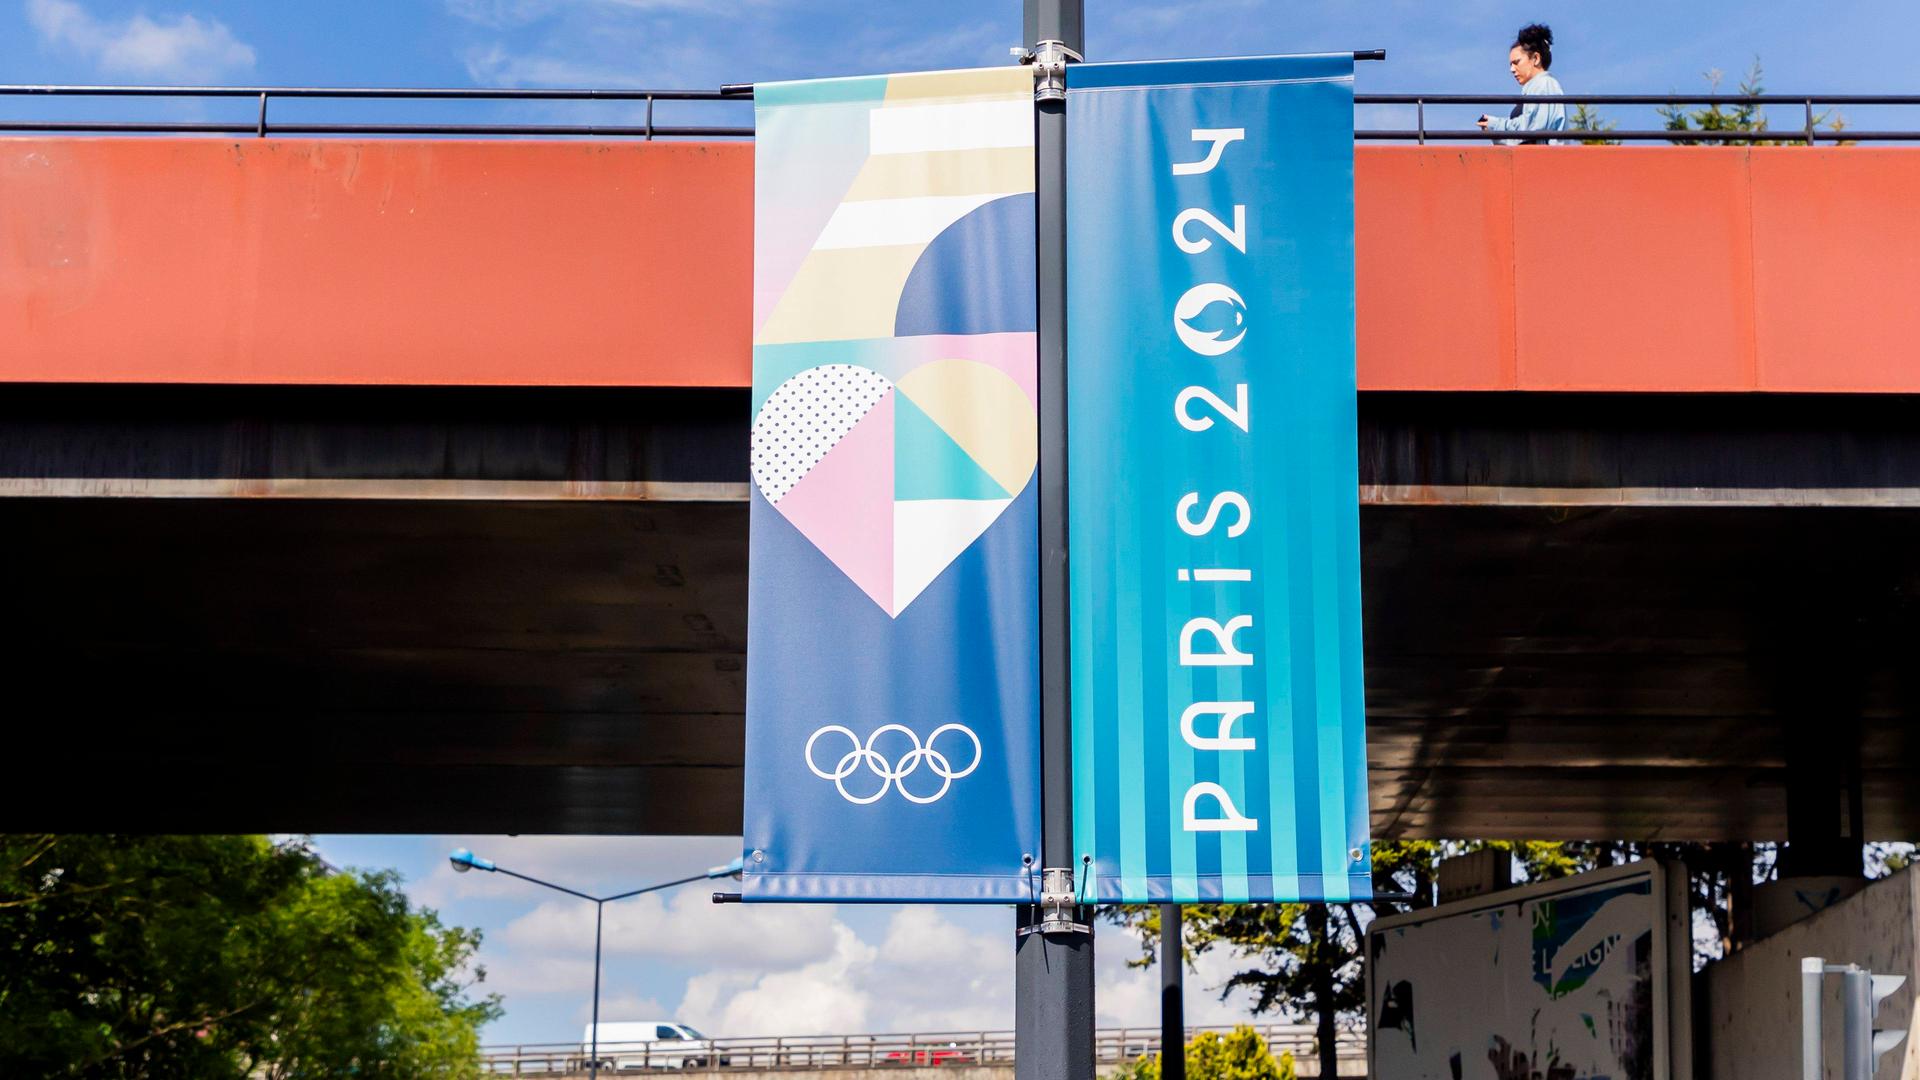 Zu sehen ist eine Fahne, im Stil zweigeteilt: Die eine Seite zeigt den Schriftzug "Paris 2024", die anderen Seite zeigt die Olympischen Ringe und bunte Formen. Die Fahne hängt an einer Straßenlaterne an einer viel befahrenen Straße.